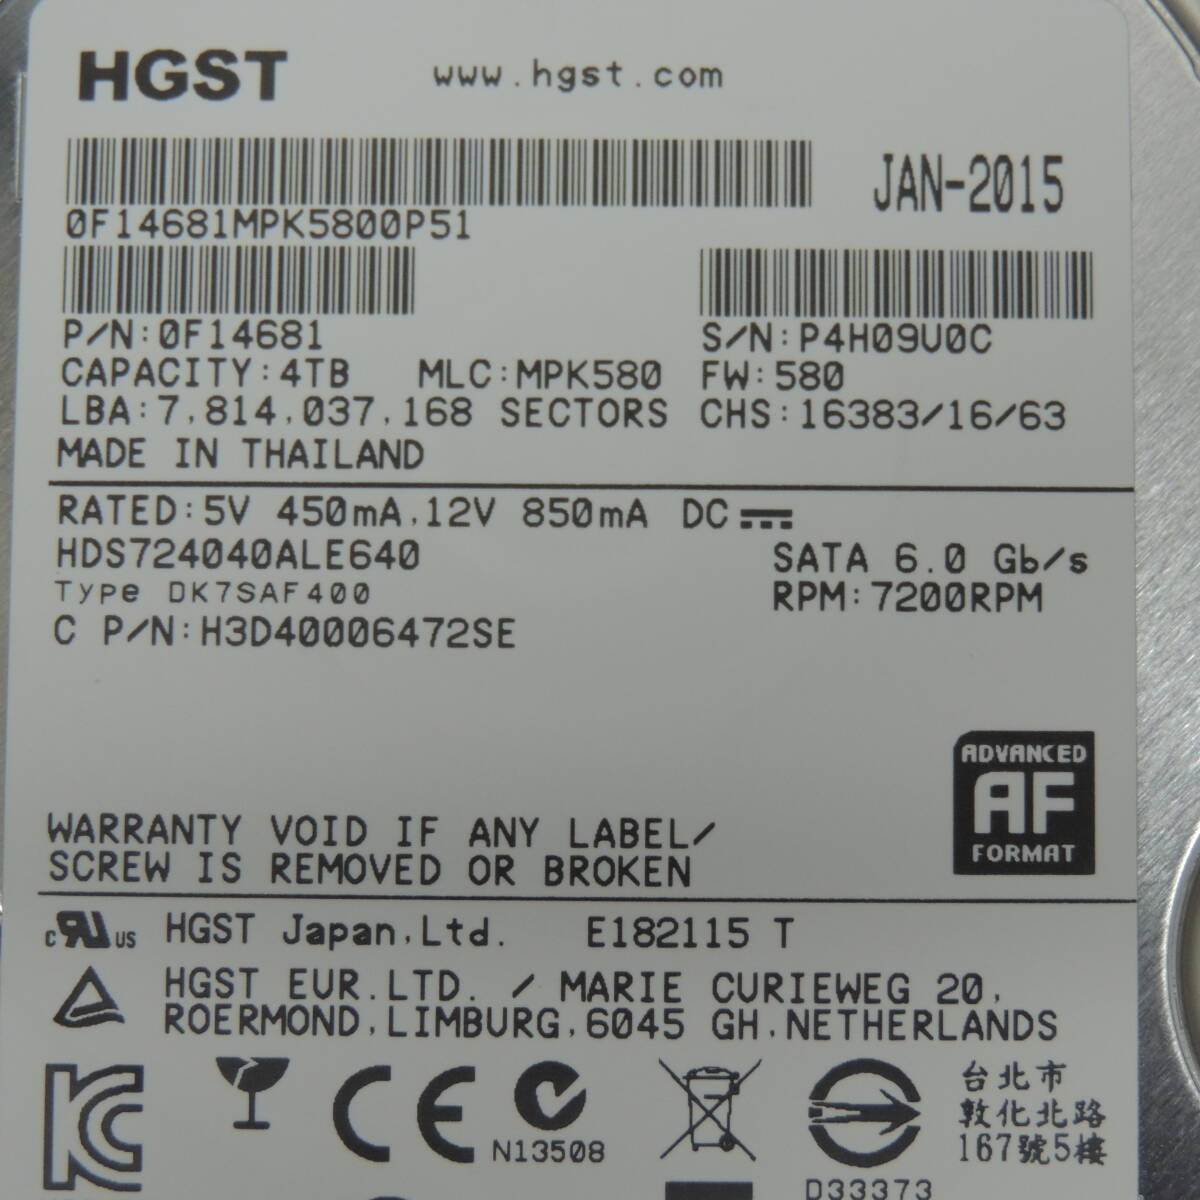 【検品済み/使用1926時間】HGST 4TB HDDD HDS724040ALE640 管理:オ-58の画像3